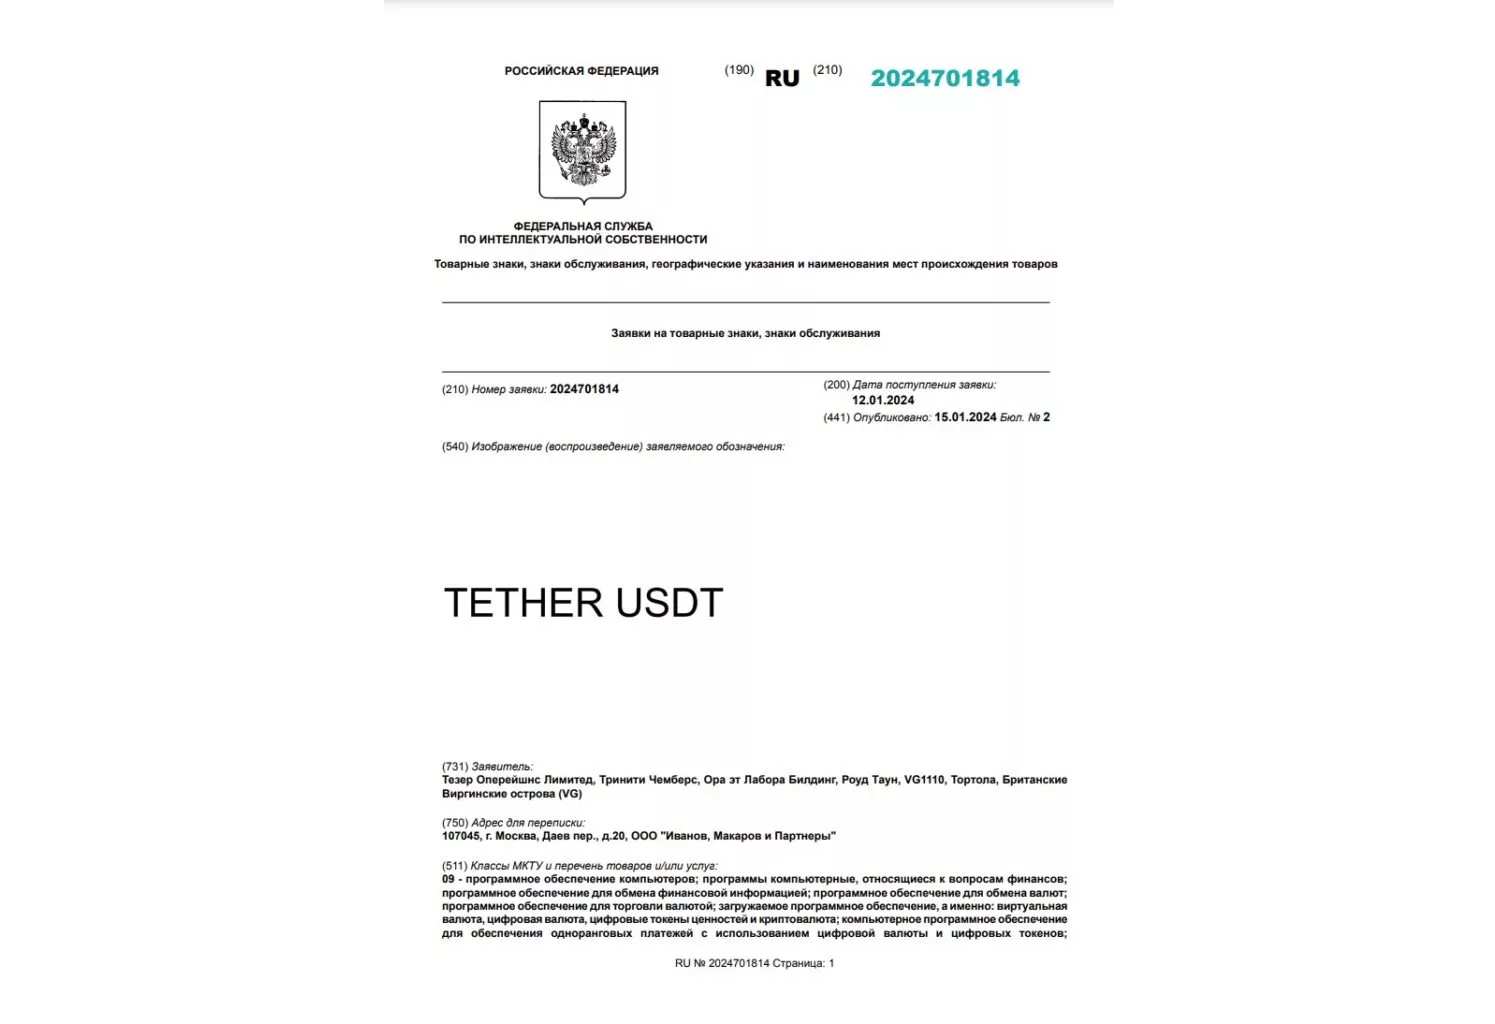 Tether хочет зарегистрировать товарные знаки в РФ